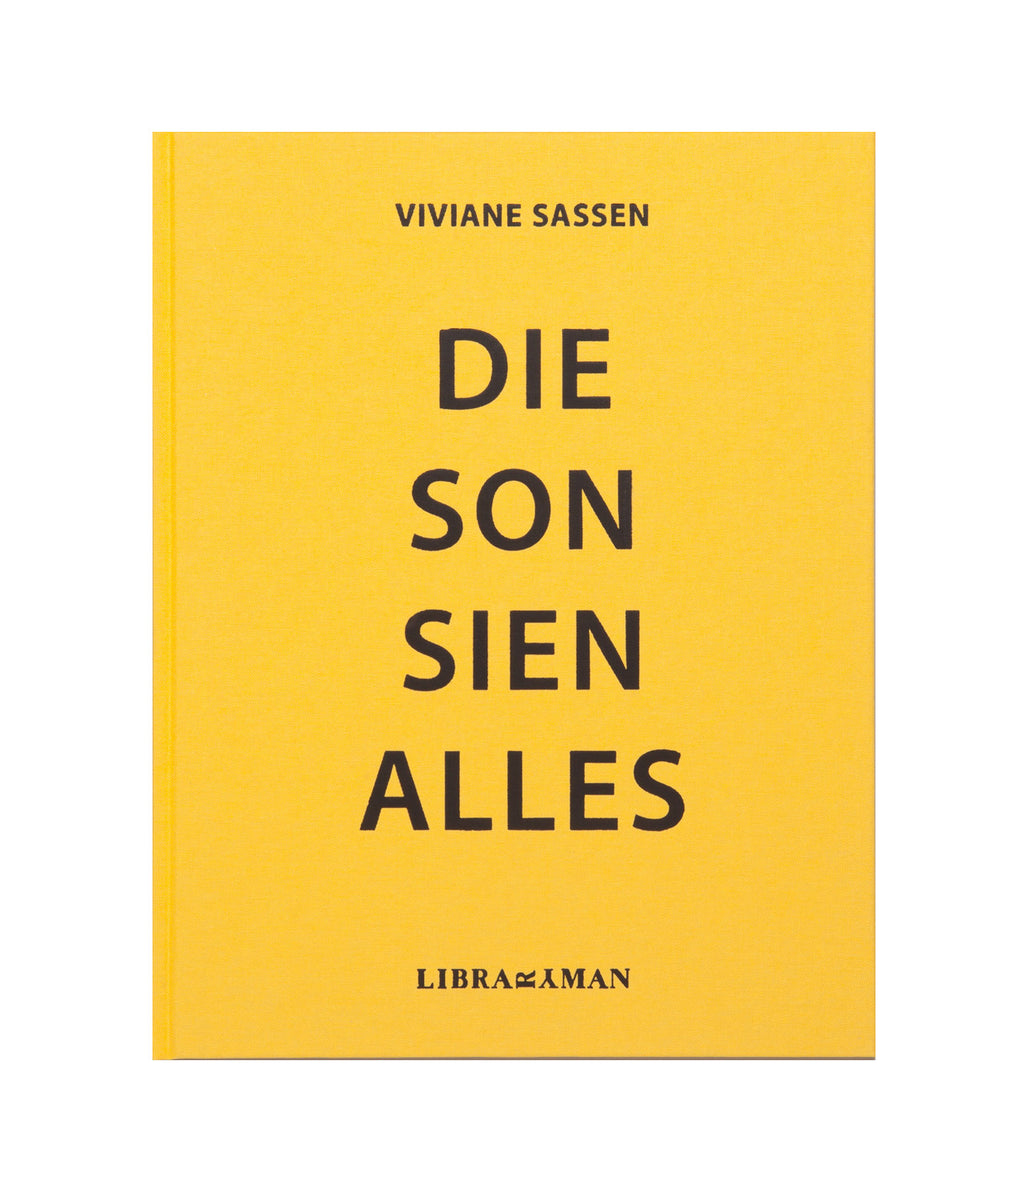 DIE SON SIEN ALLES by VIVIANE SASSEN – Kominek